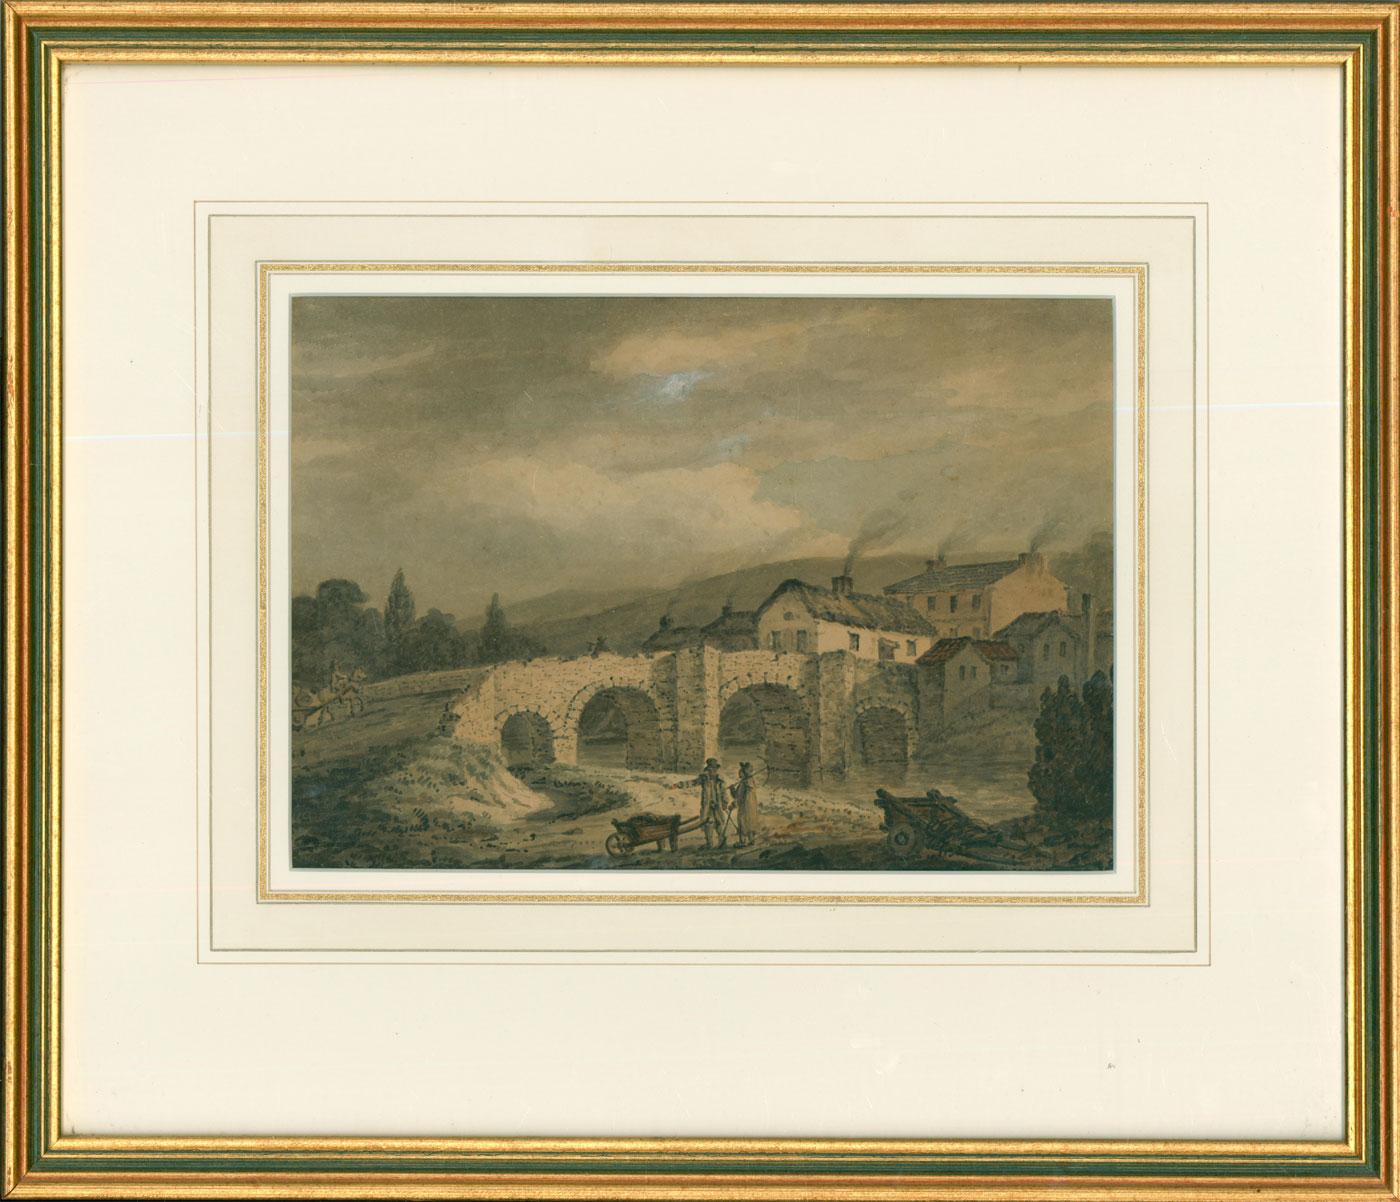 Unknown Landscape Art - Framed Early 19th Century Watercolour - Roadmen by the Bridge